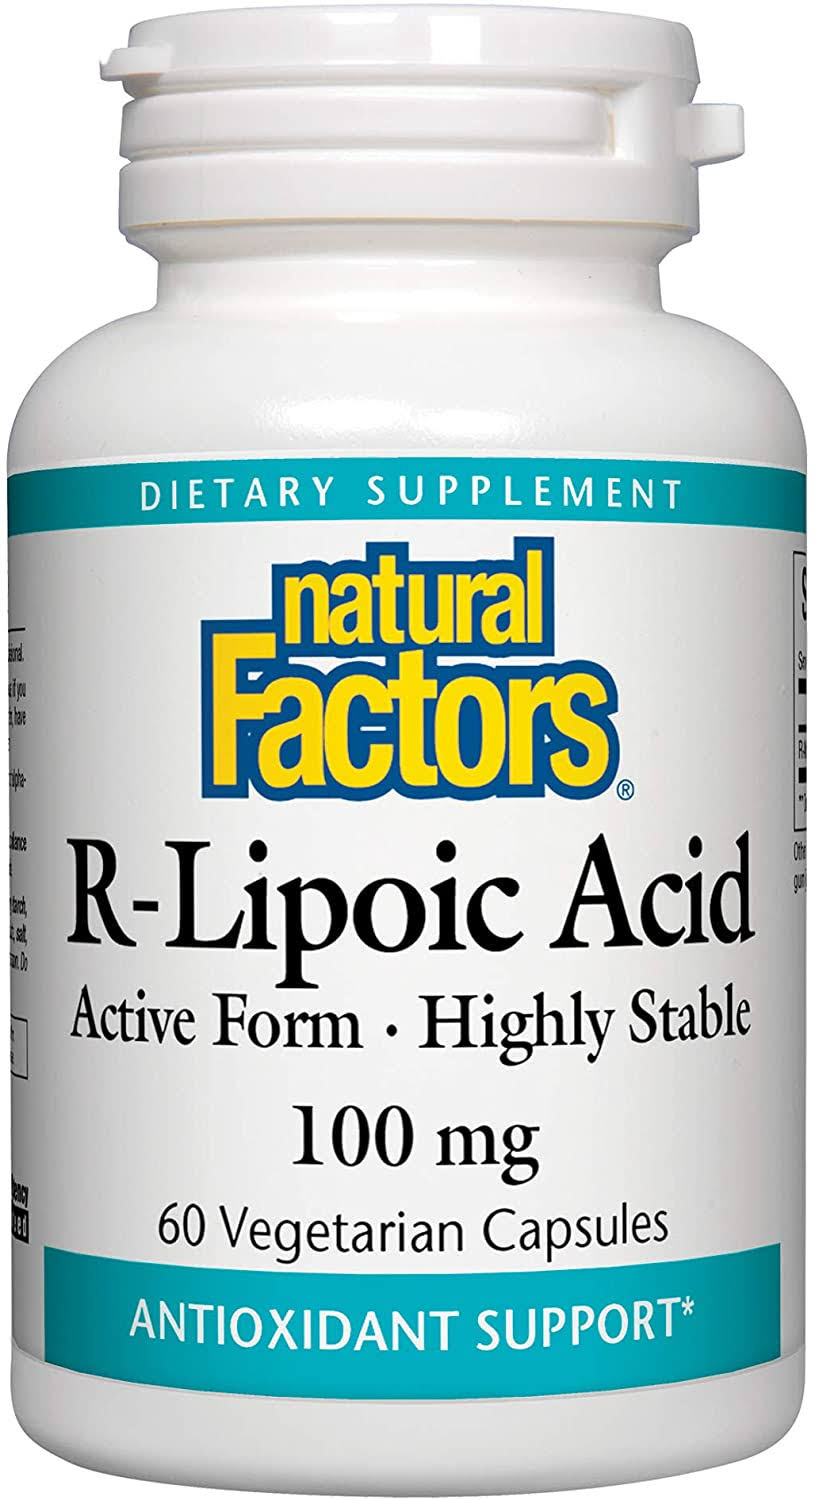 Natural Factors R-Lipoic Acid Supplement - 60 Vegetarian Capsules